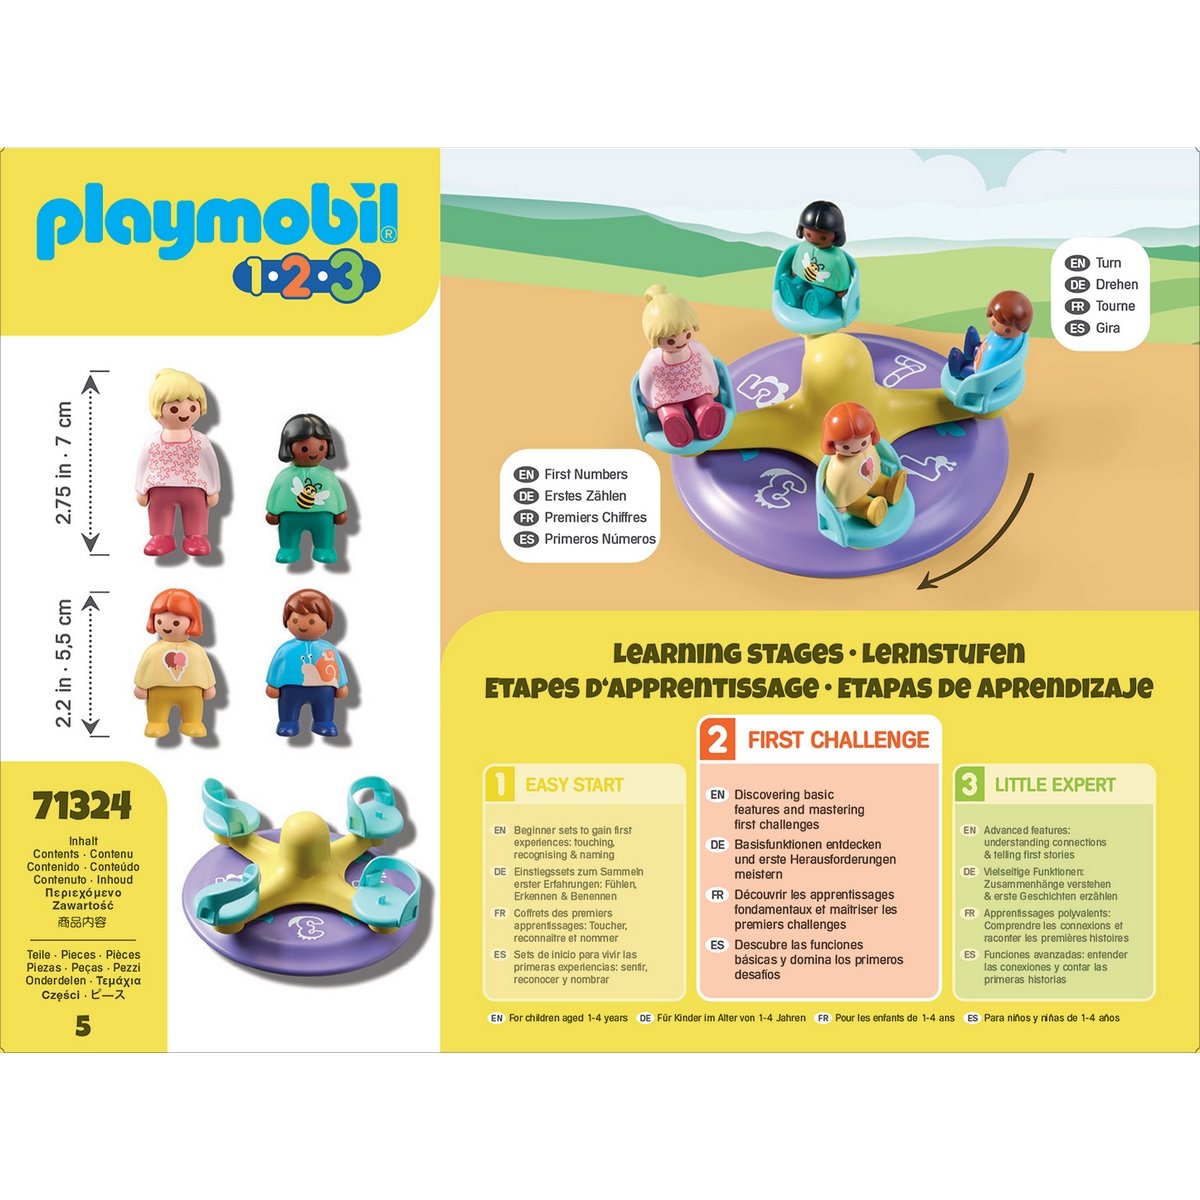 Playmobil Enfants et tourniquet 1.2.3 (71324) au meilleur prix sur